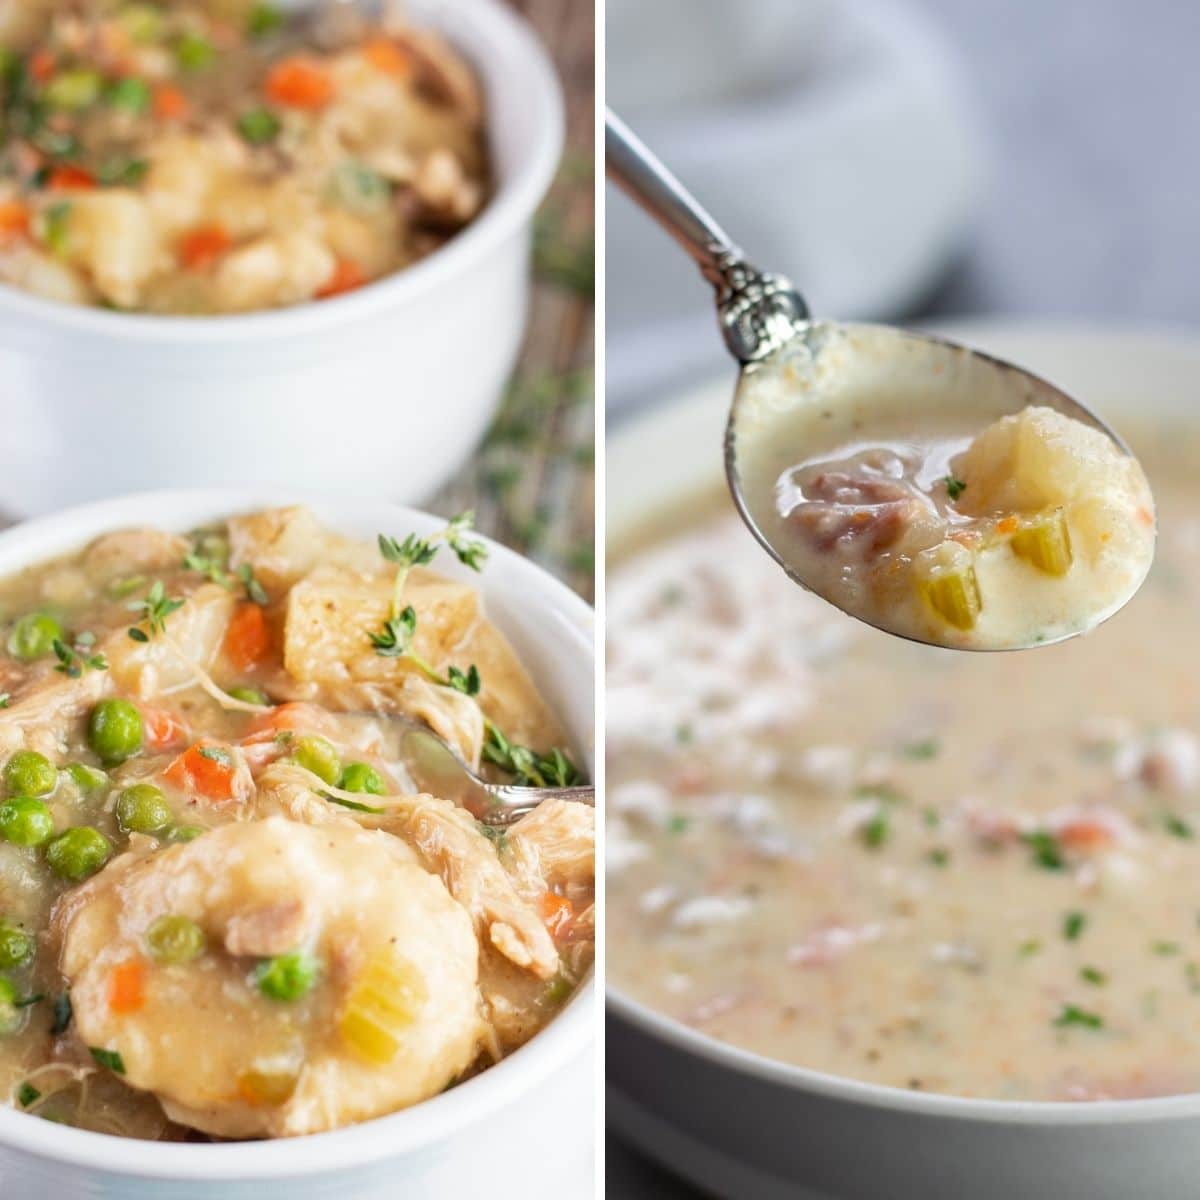 Le migliori ricette di zuppa di crockpot con 2 foto di collage di immagini di zuppe servite in ciotole bianche.